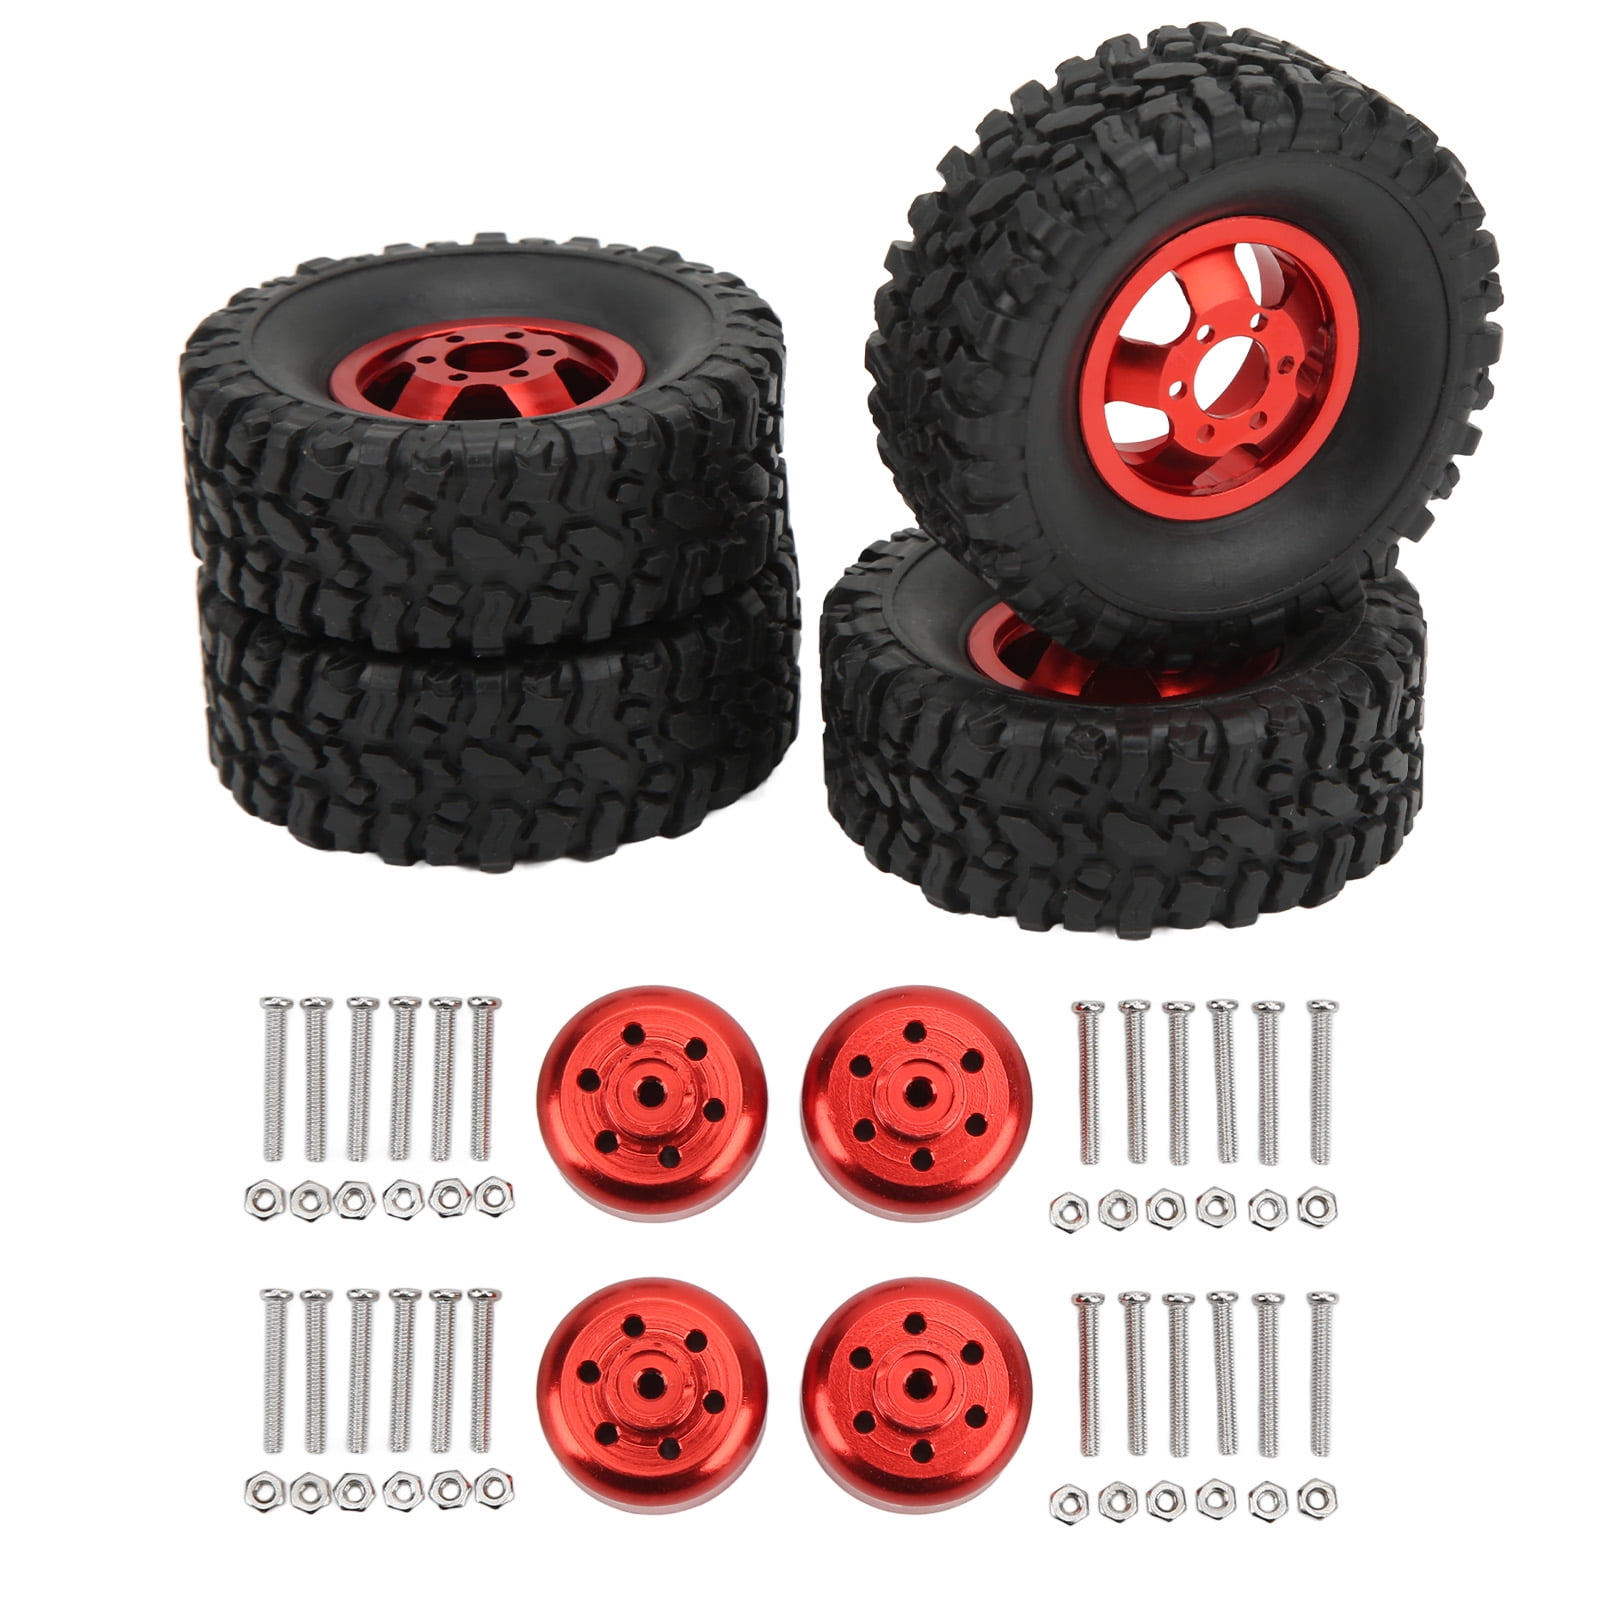 4WD Wheel Hub Rim Tires For WPL B14 B16 B24 B36 C14 C24 RC Car 